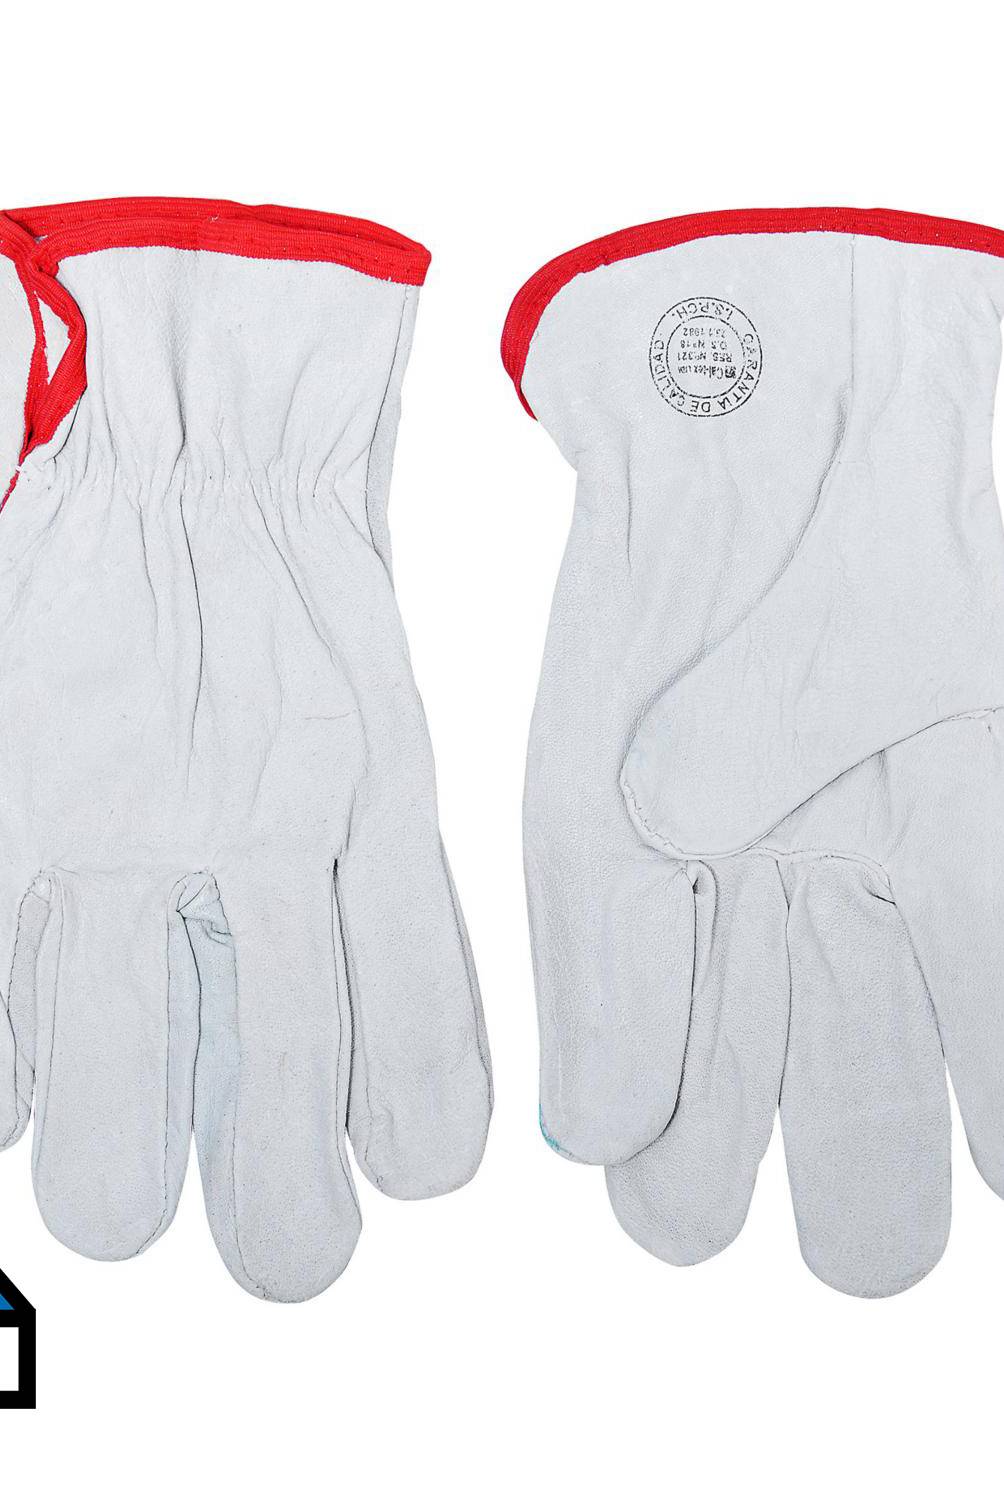 PRO PACK - Pack 10 pares guantes cuero cabritilla supervisor